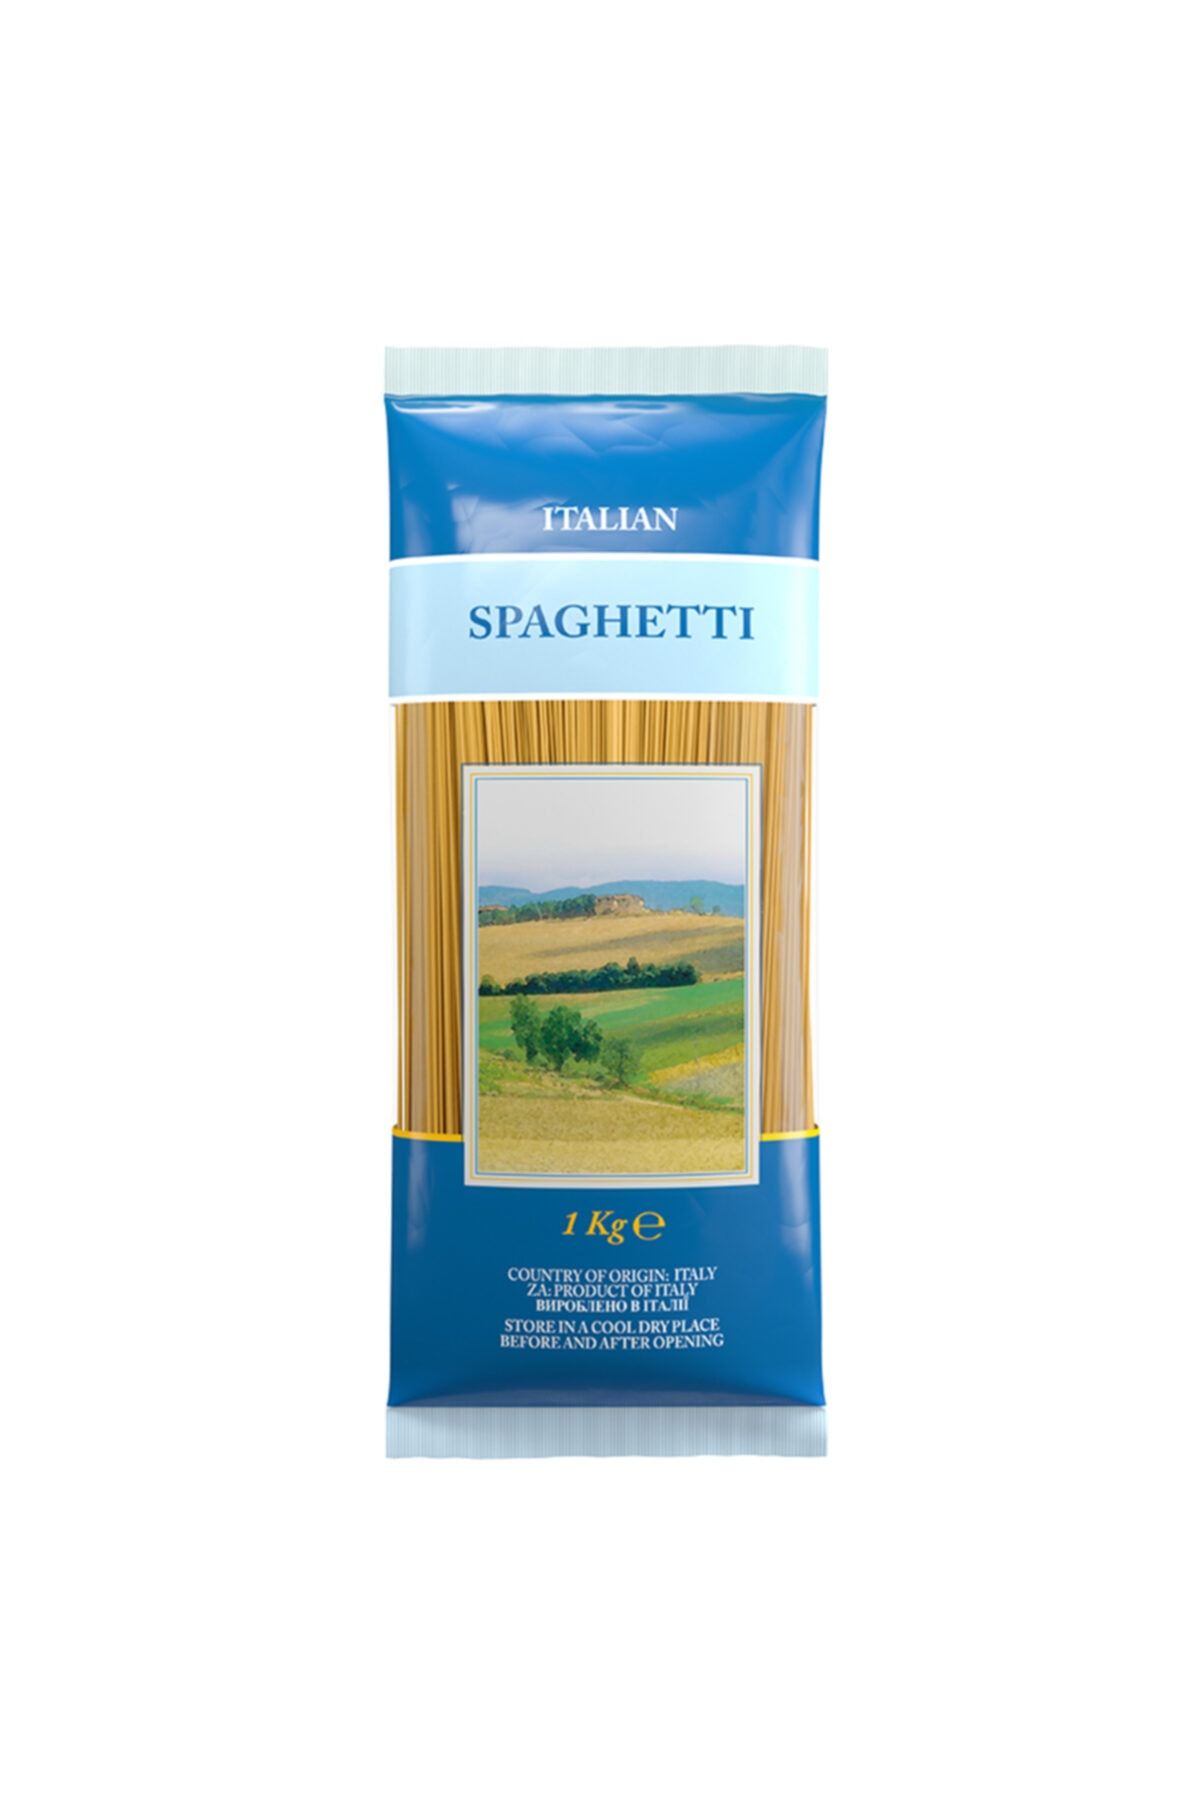 Amway Italıan Spaghetti Italyan Makarnası 1 Kg.`lik 4 Paket ''ürün Kodu: 4655''